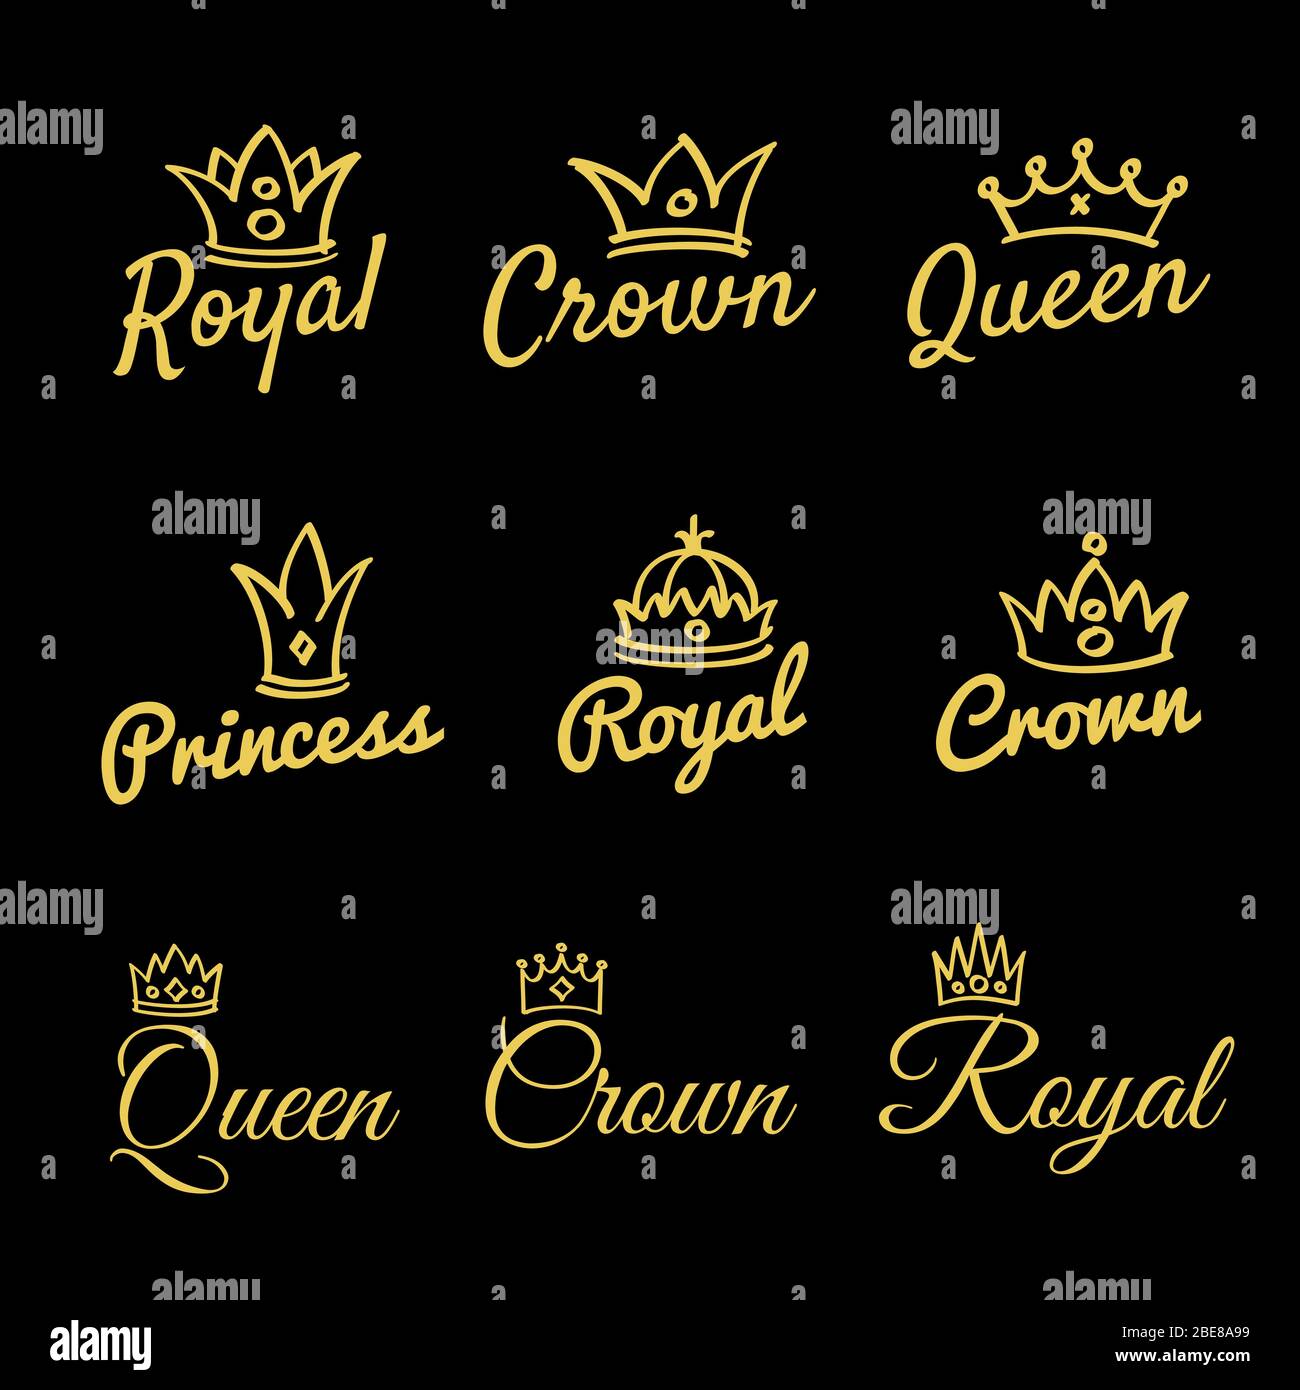 King's Queen